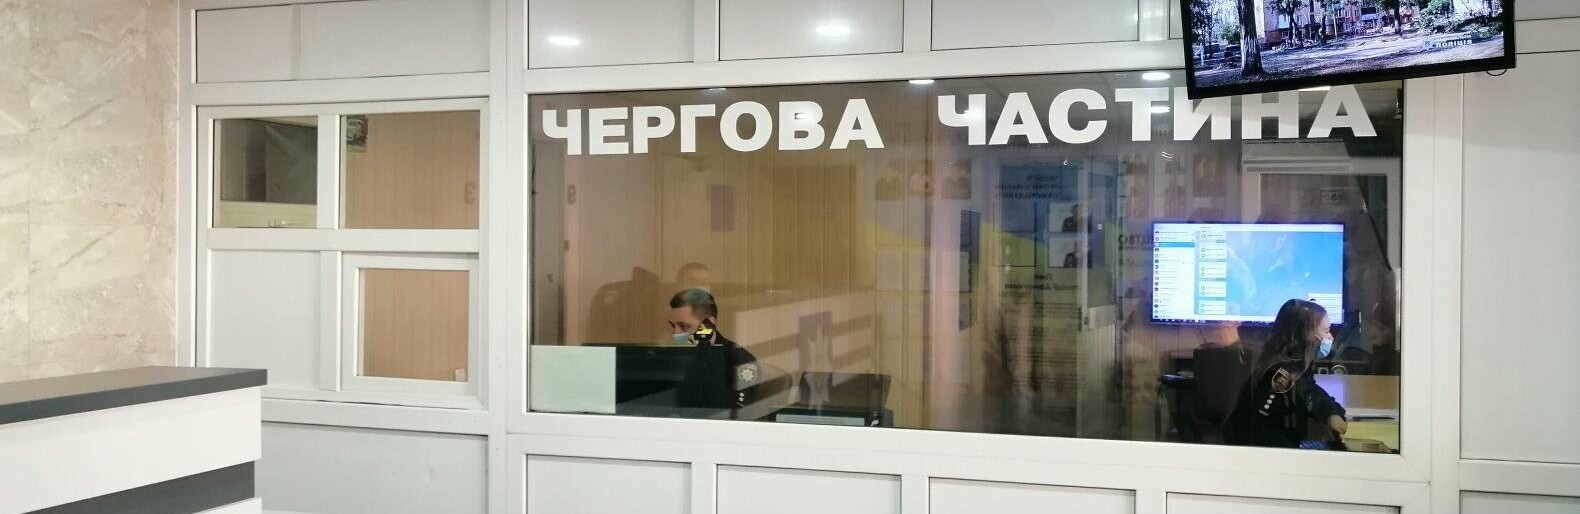 В Курахово задержали пассажира с поддельным сертификатом о вакцинации